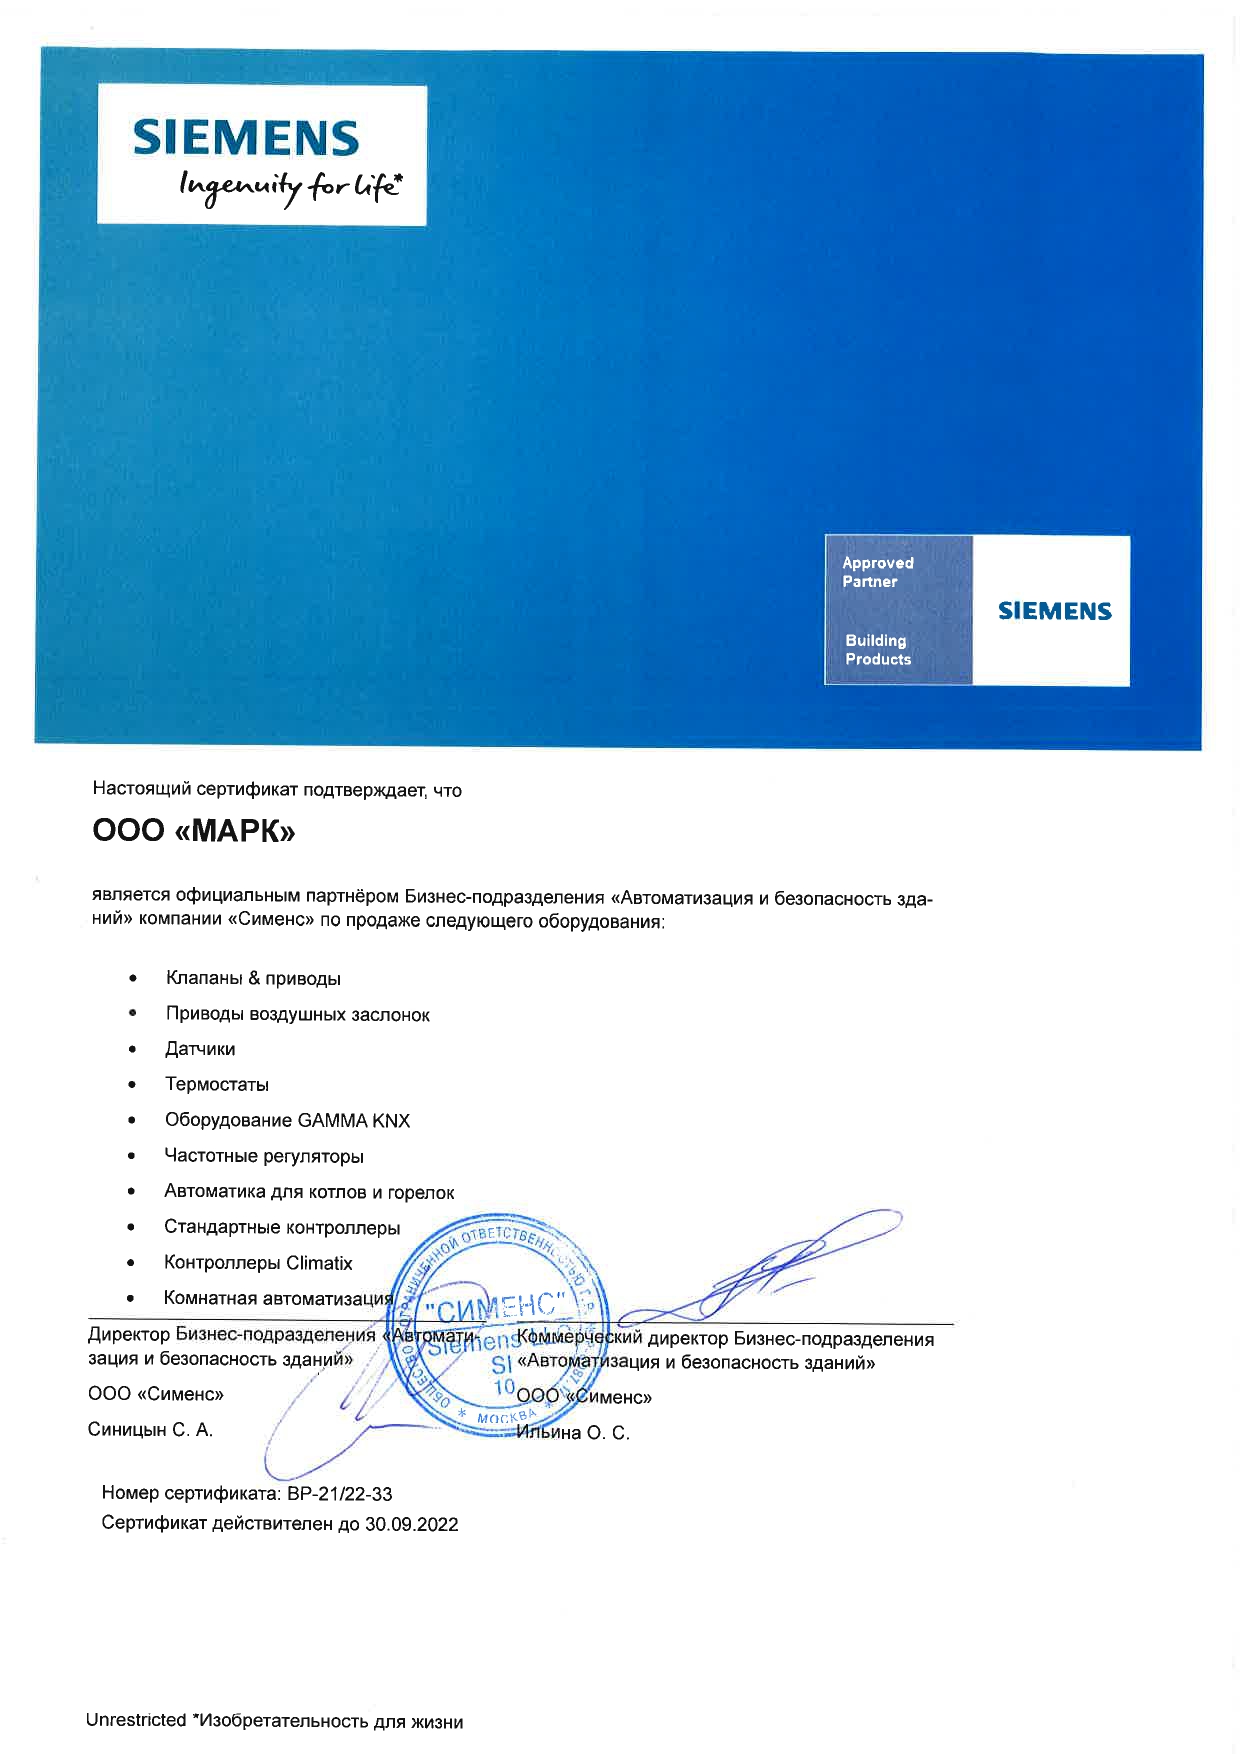 Официальный сертификат партнера siemens